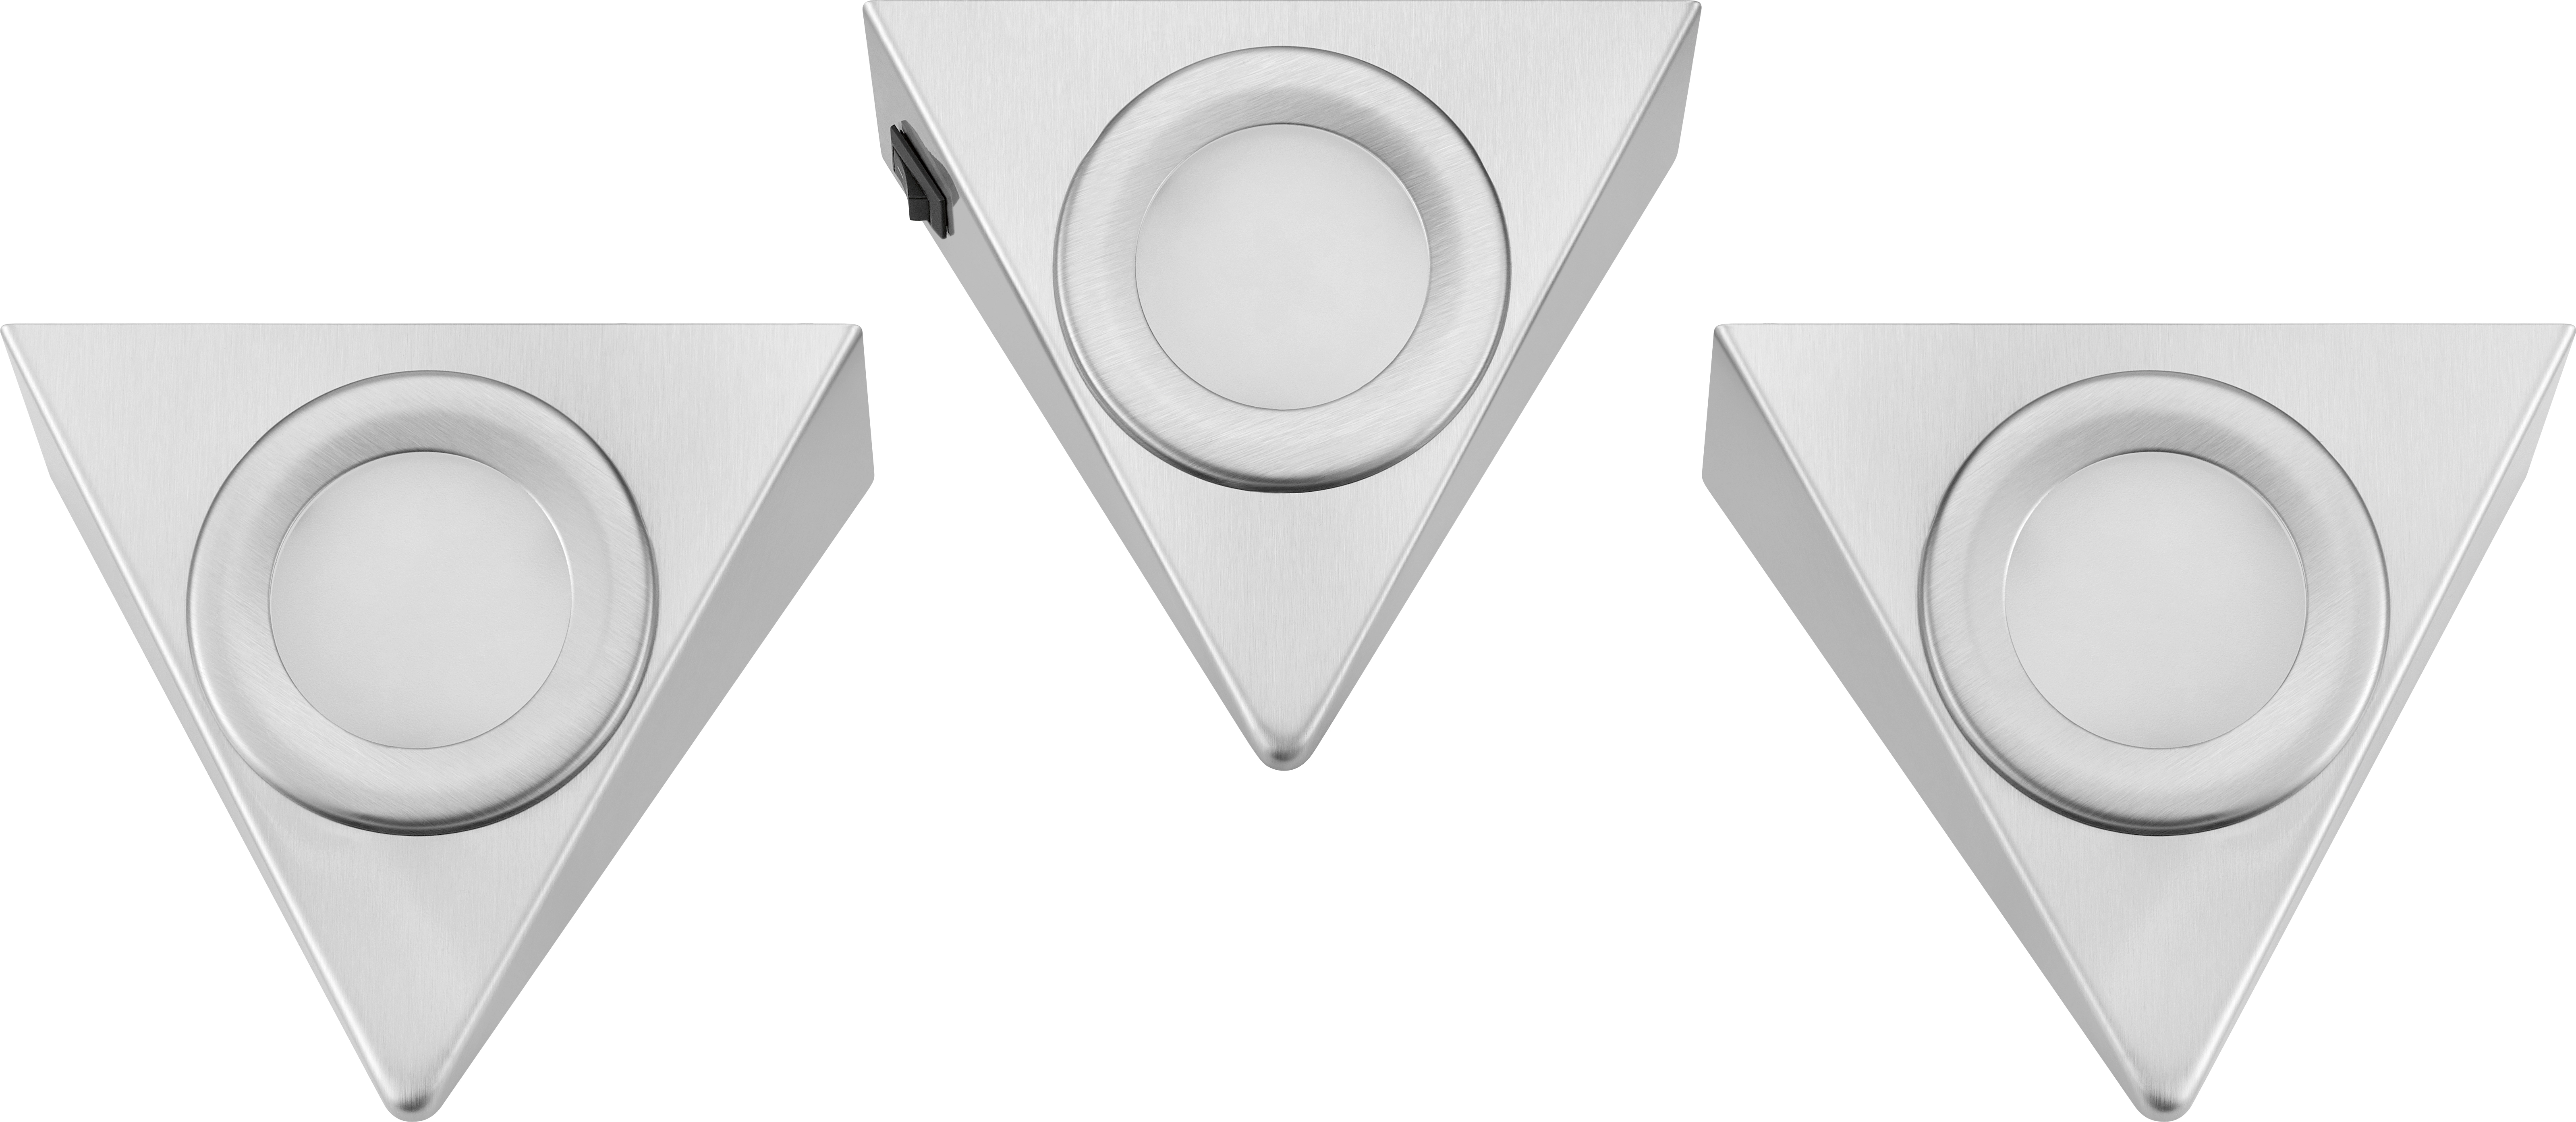 LED-Unterbauleuchte Dreieck kaufen OBI EEK: 3 G Silber 3er-Set W bei